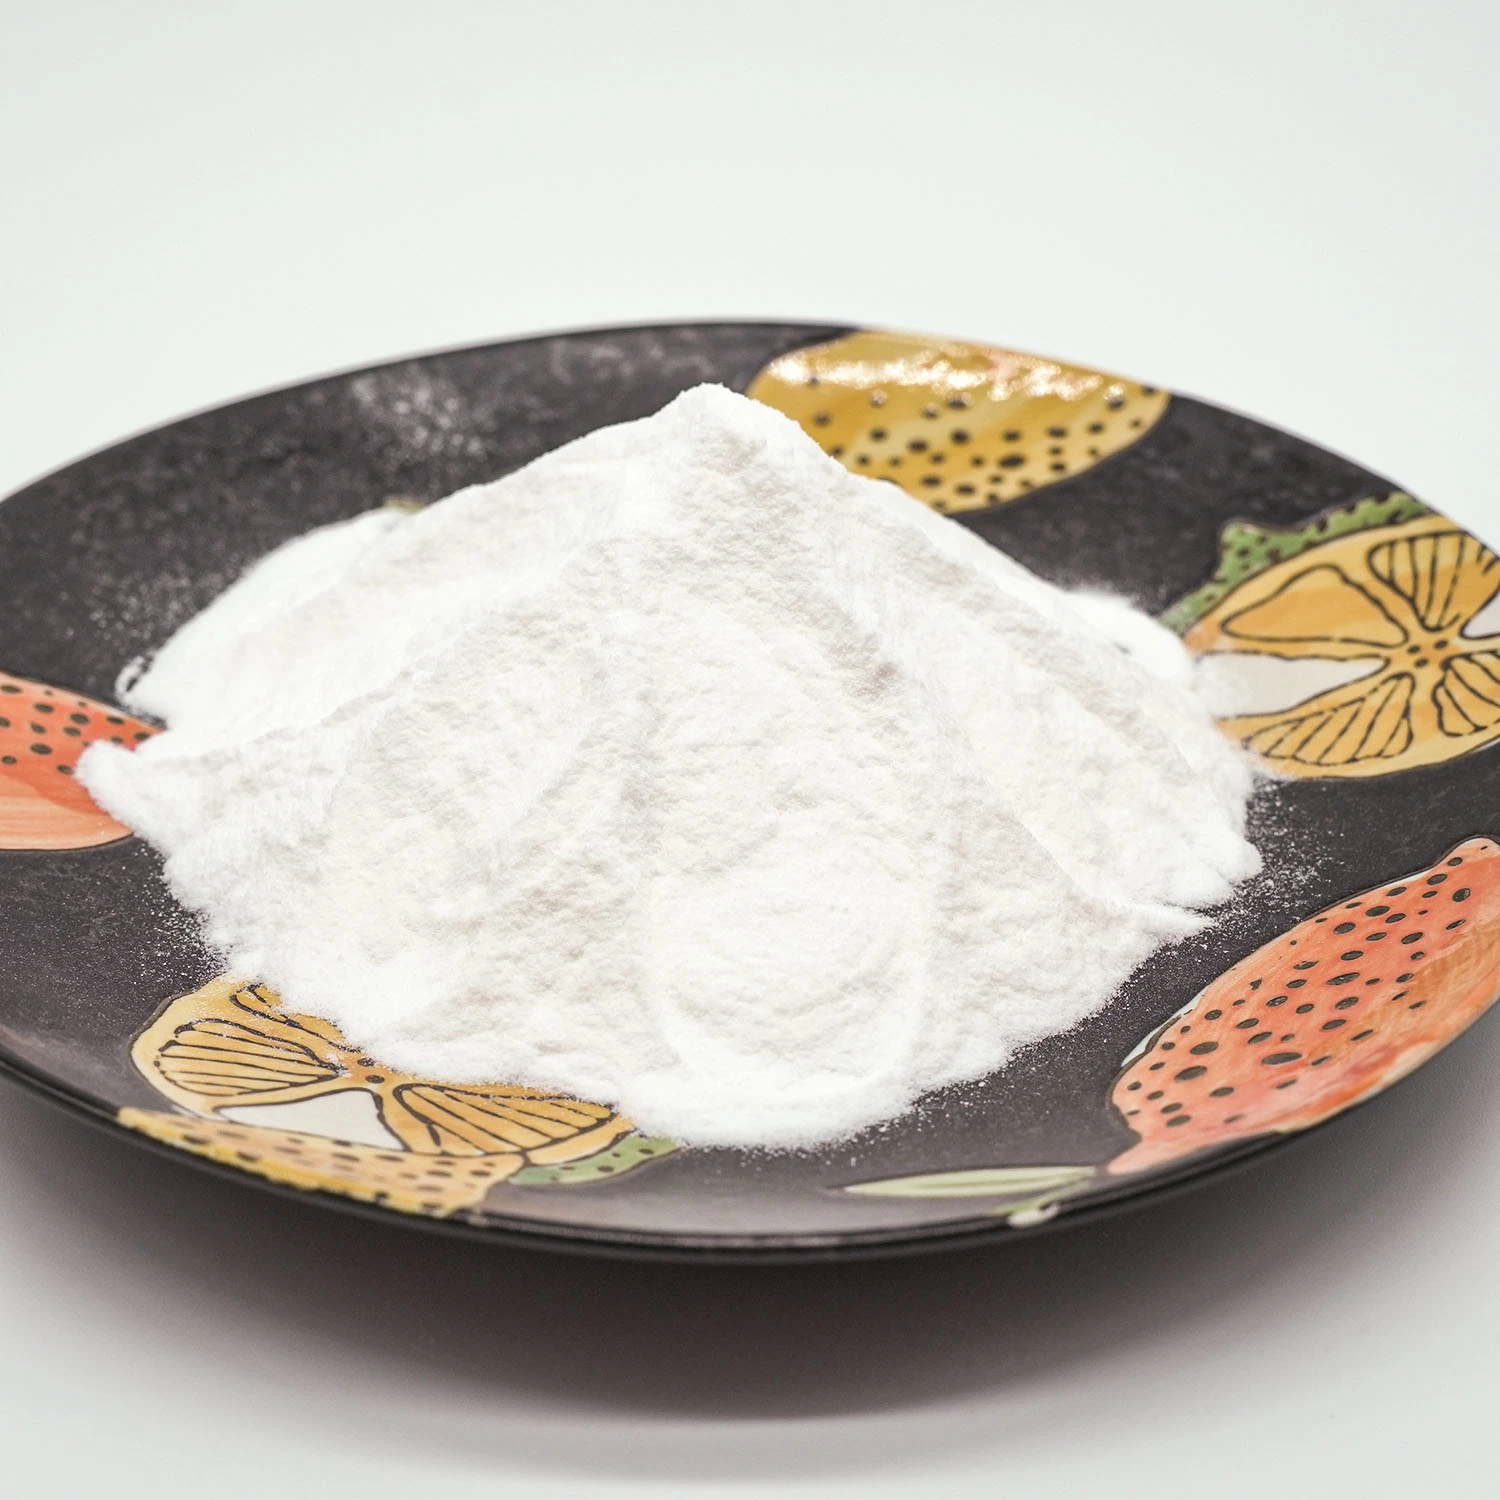 Lactobacillus Plantarum Probiotic Powder Supplement for Improved Health